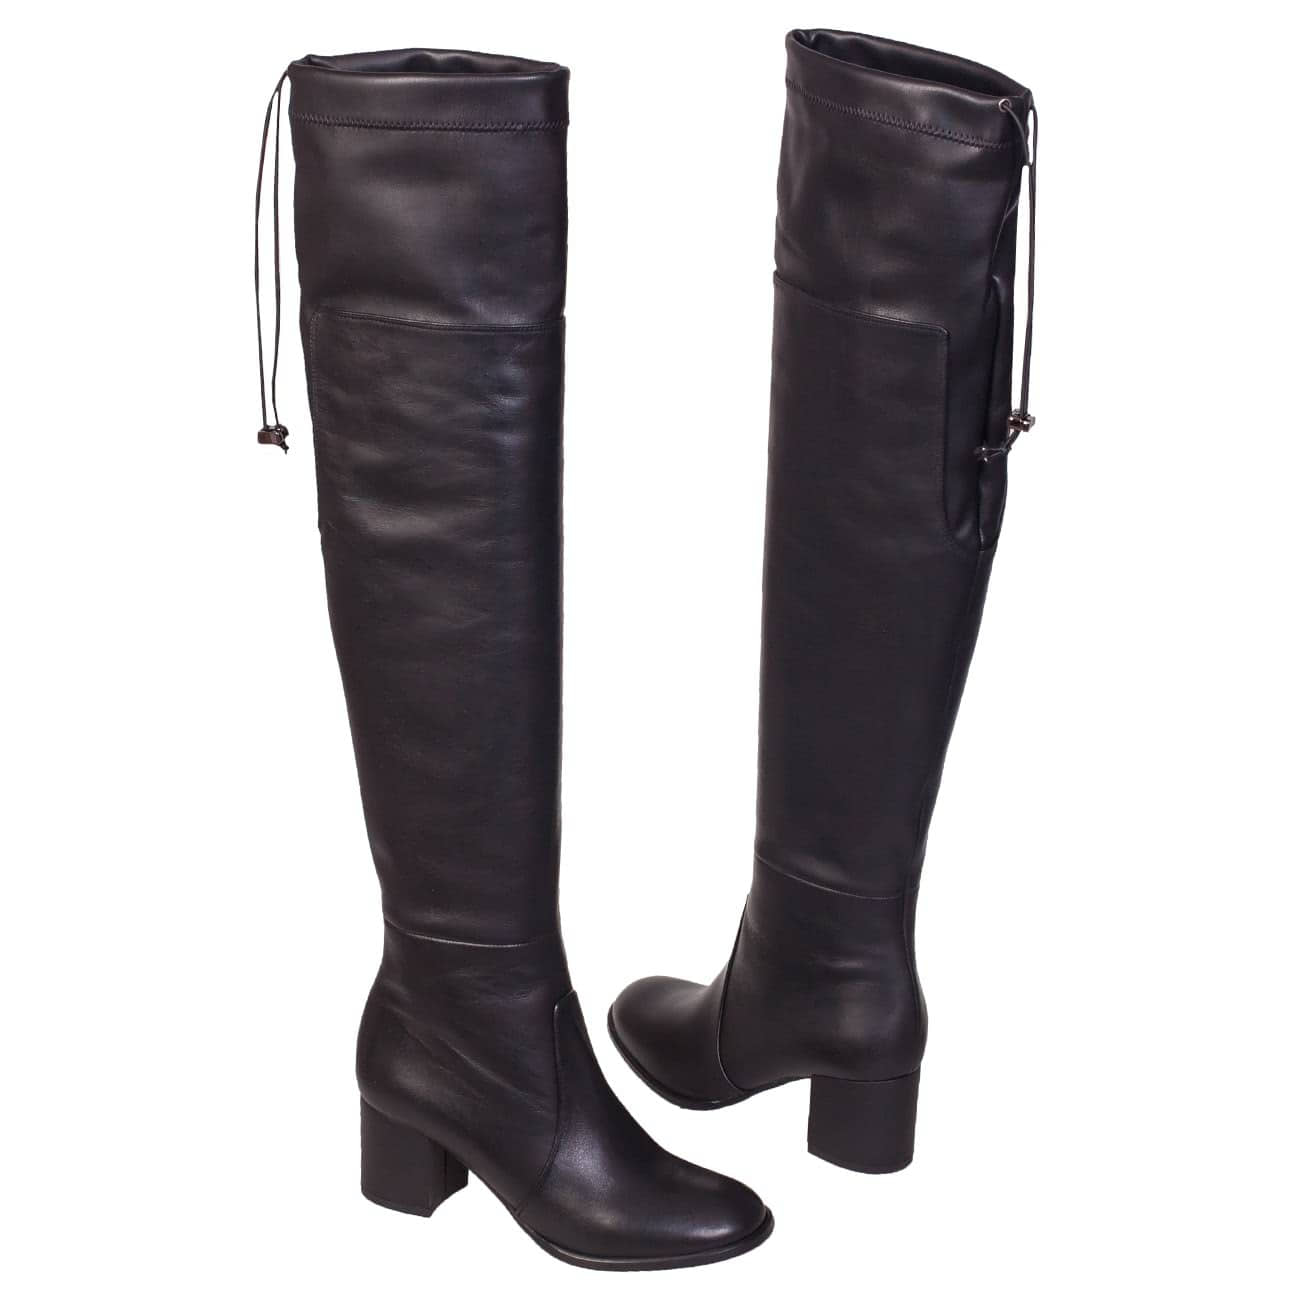 Женские кожаные стрейч ботфорты на среднем каблуке 6 см в интернет магазинеKwinto